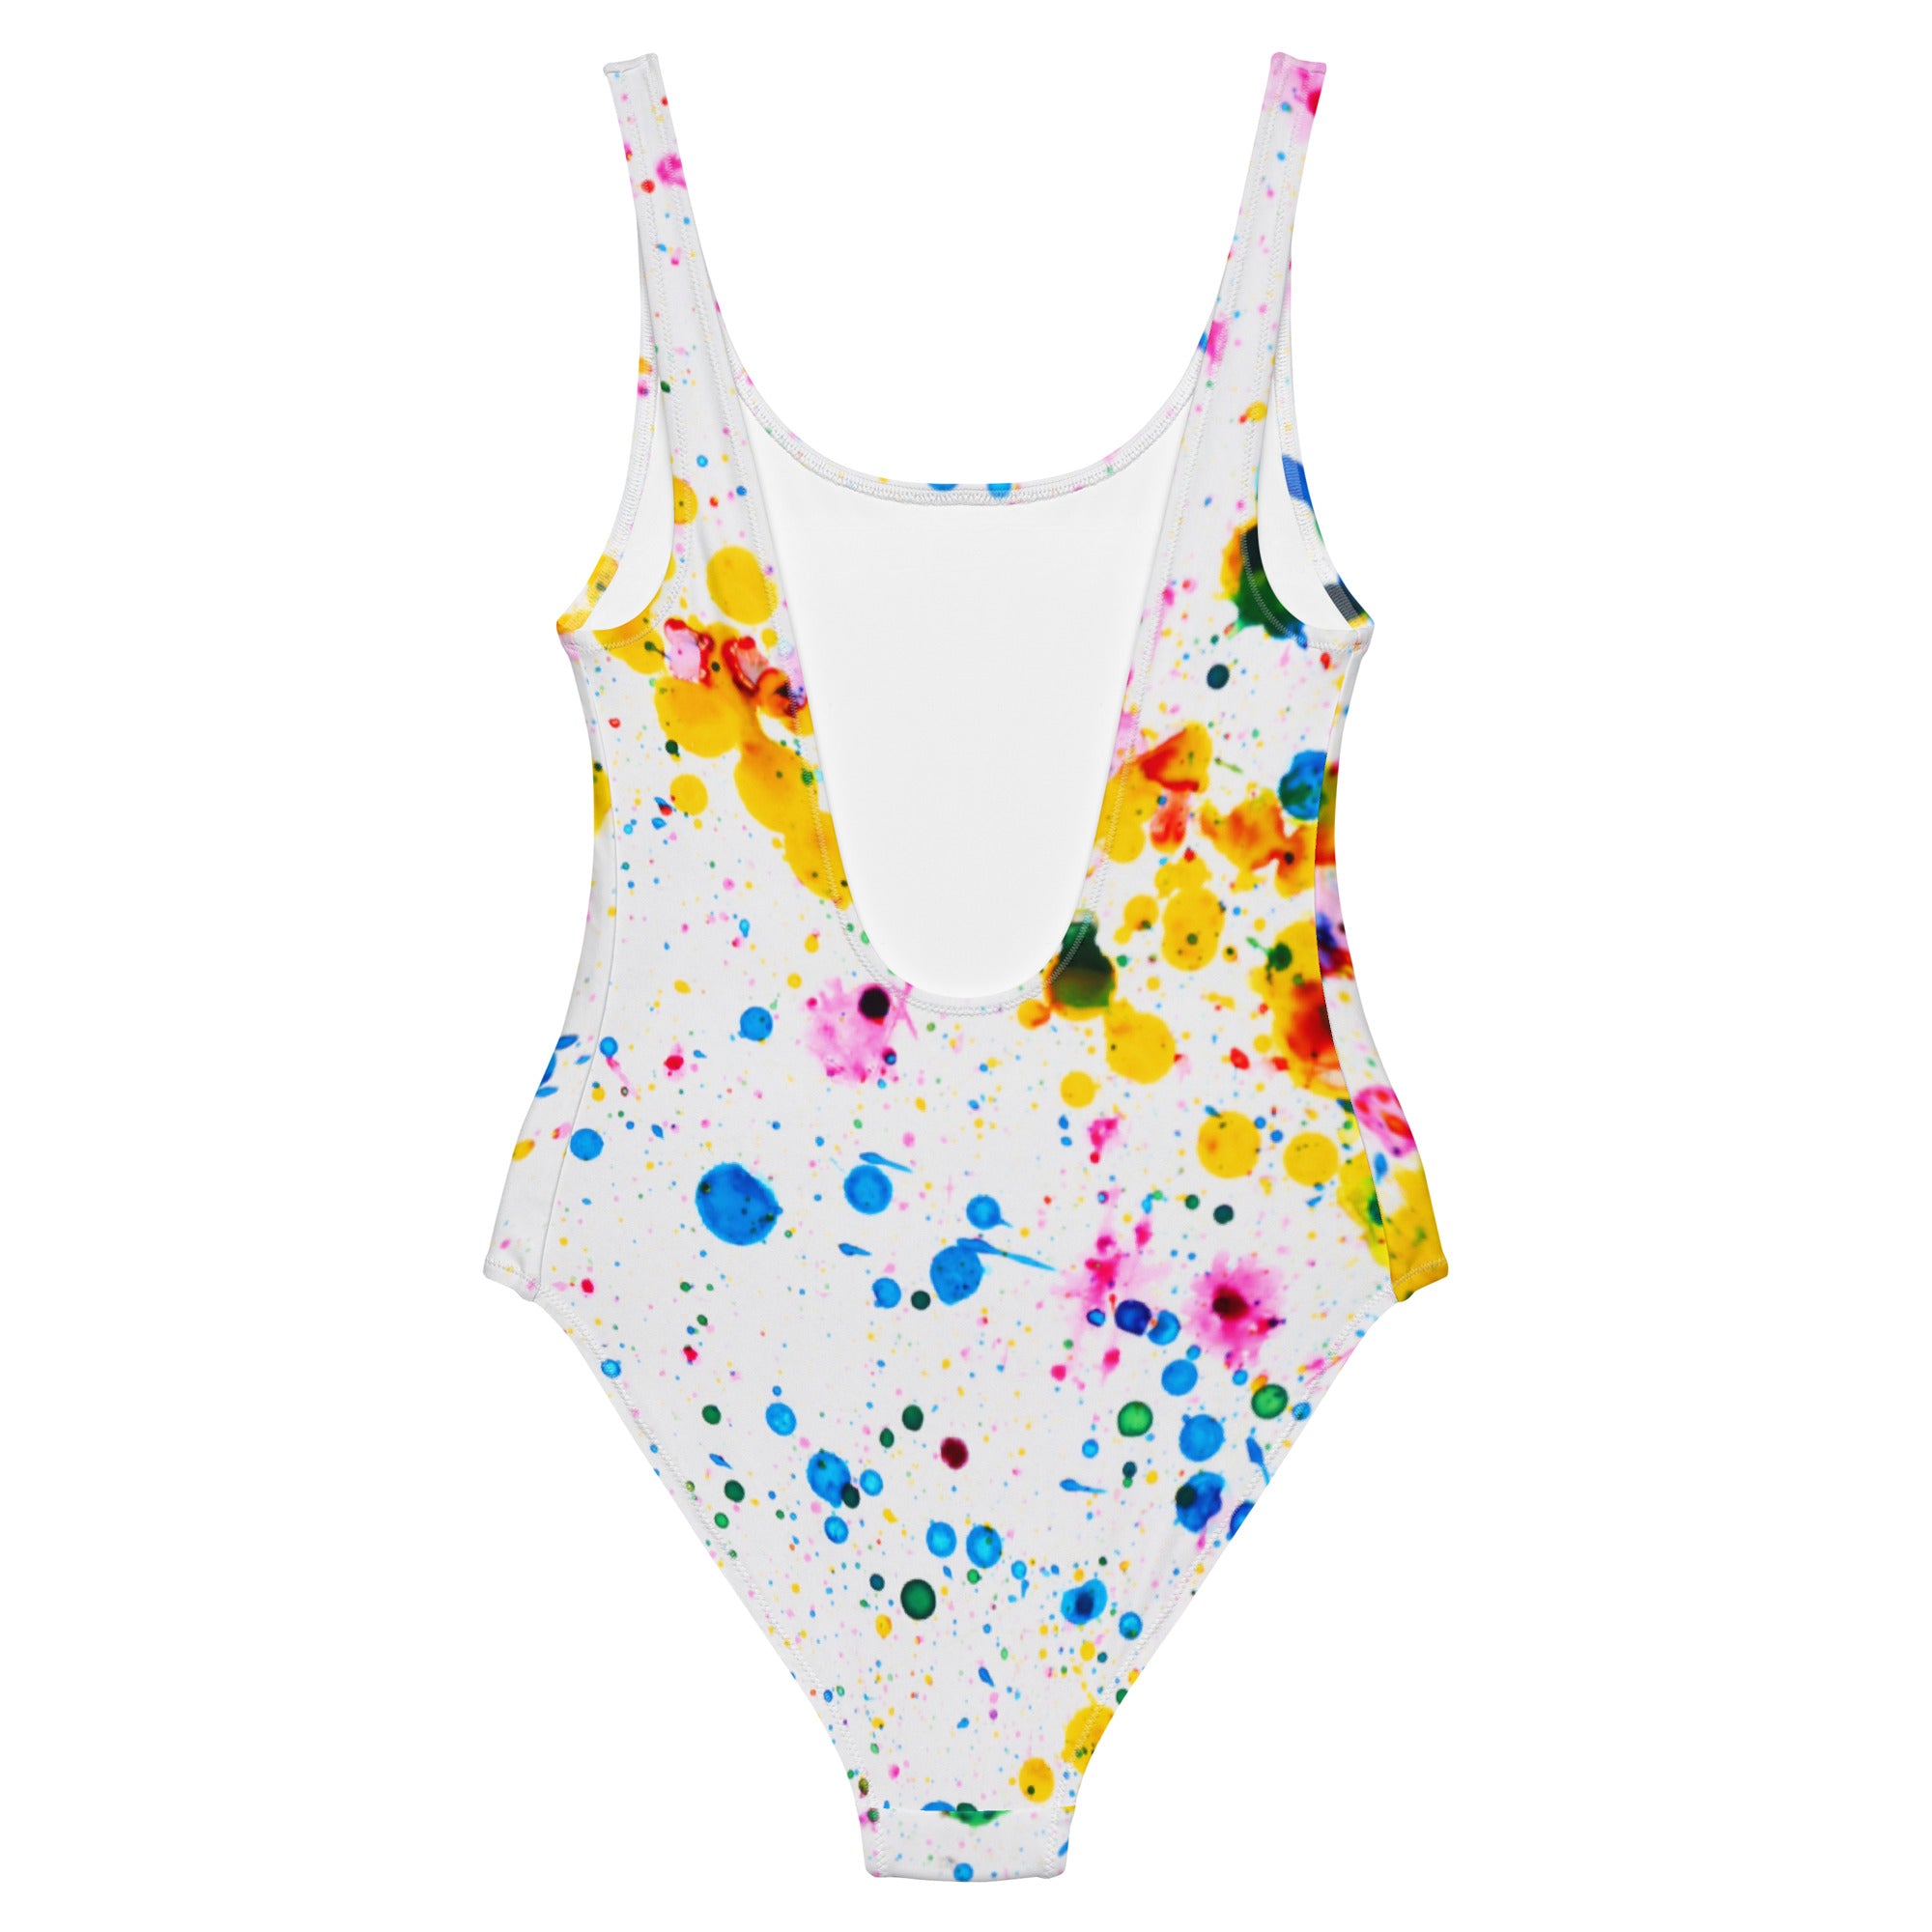 Splatter paint printed women’s swimsuit